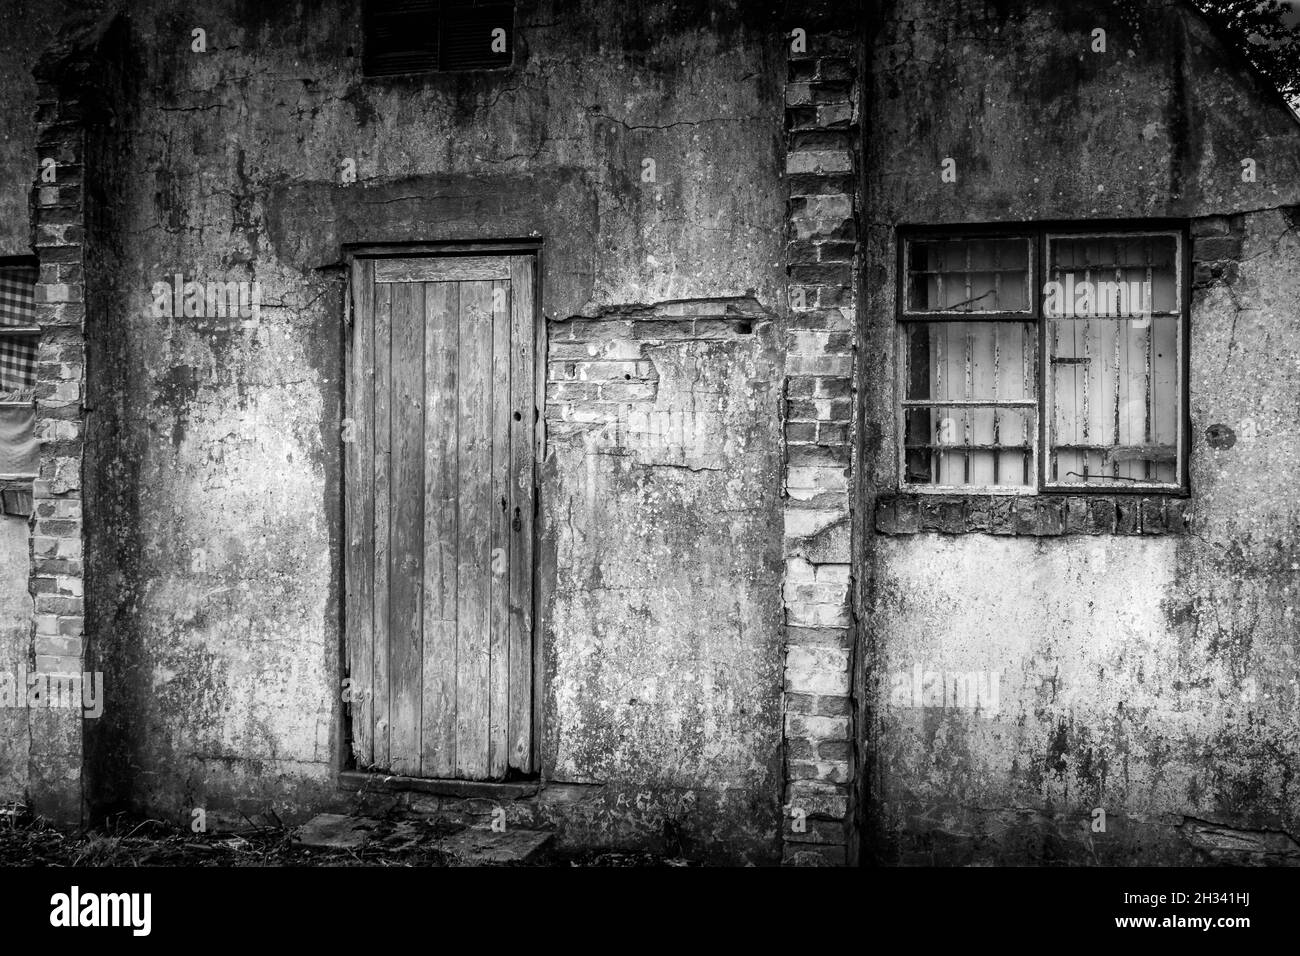 Vista posteriore del vecchio rifugio Nissen utilizzato durante la guerra fredda per ospitare prigionieri militari, mostrando finestra con bar originali e vecchia porta di legno. Nessuna gente Foto Stock